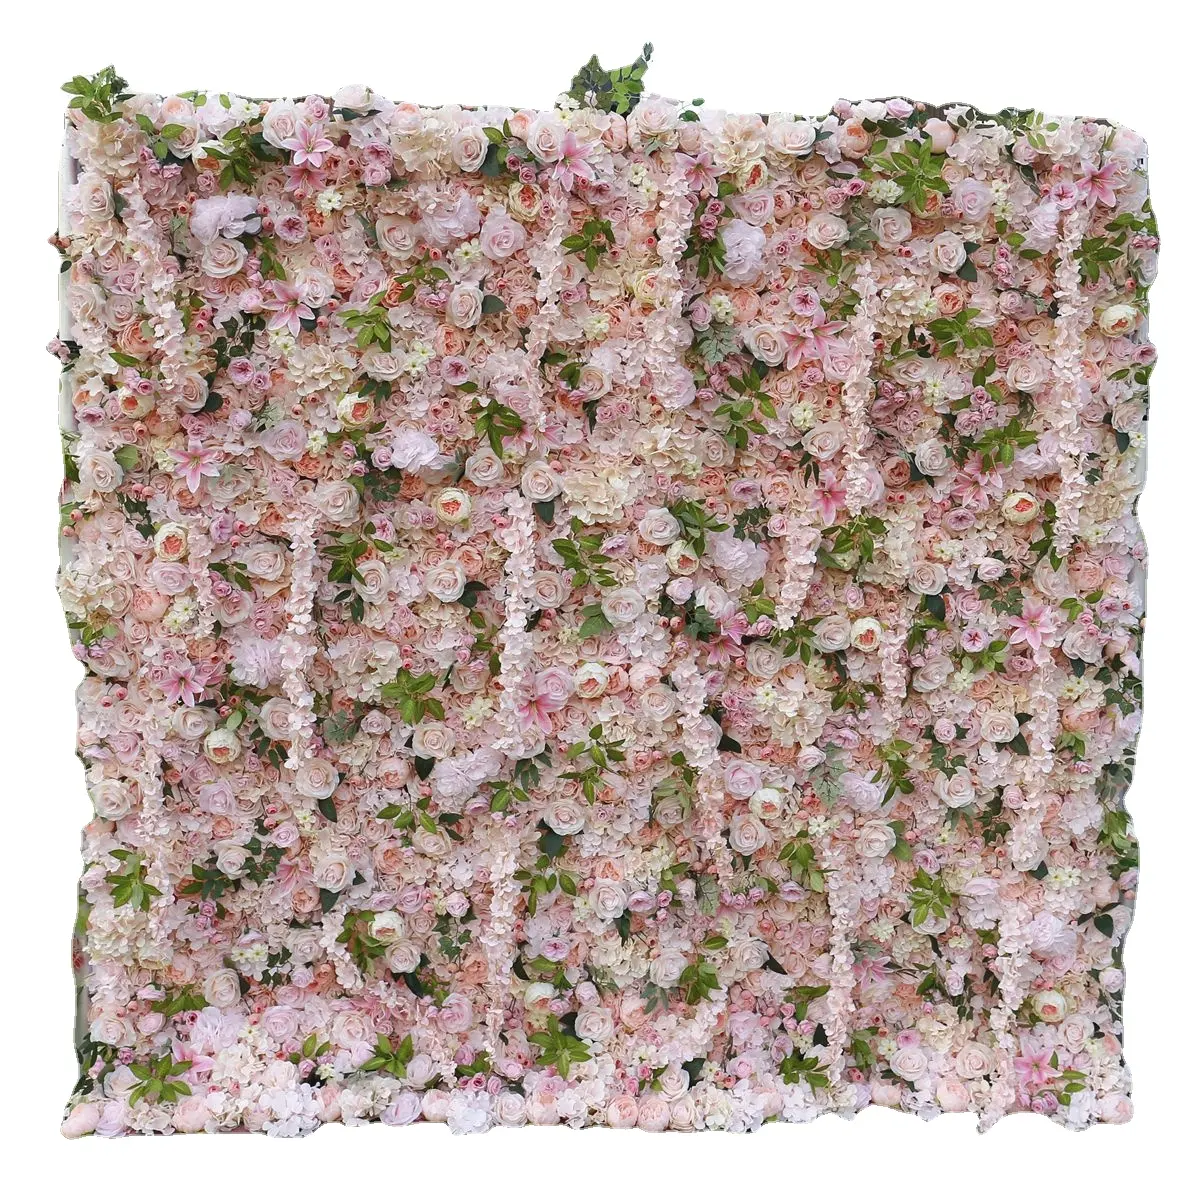 Panneau de fond de fleurs roses enroulable en 3D Fleur artificielle en soie pour la maison, la fête, le mariage et l'événement.